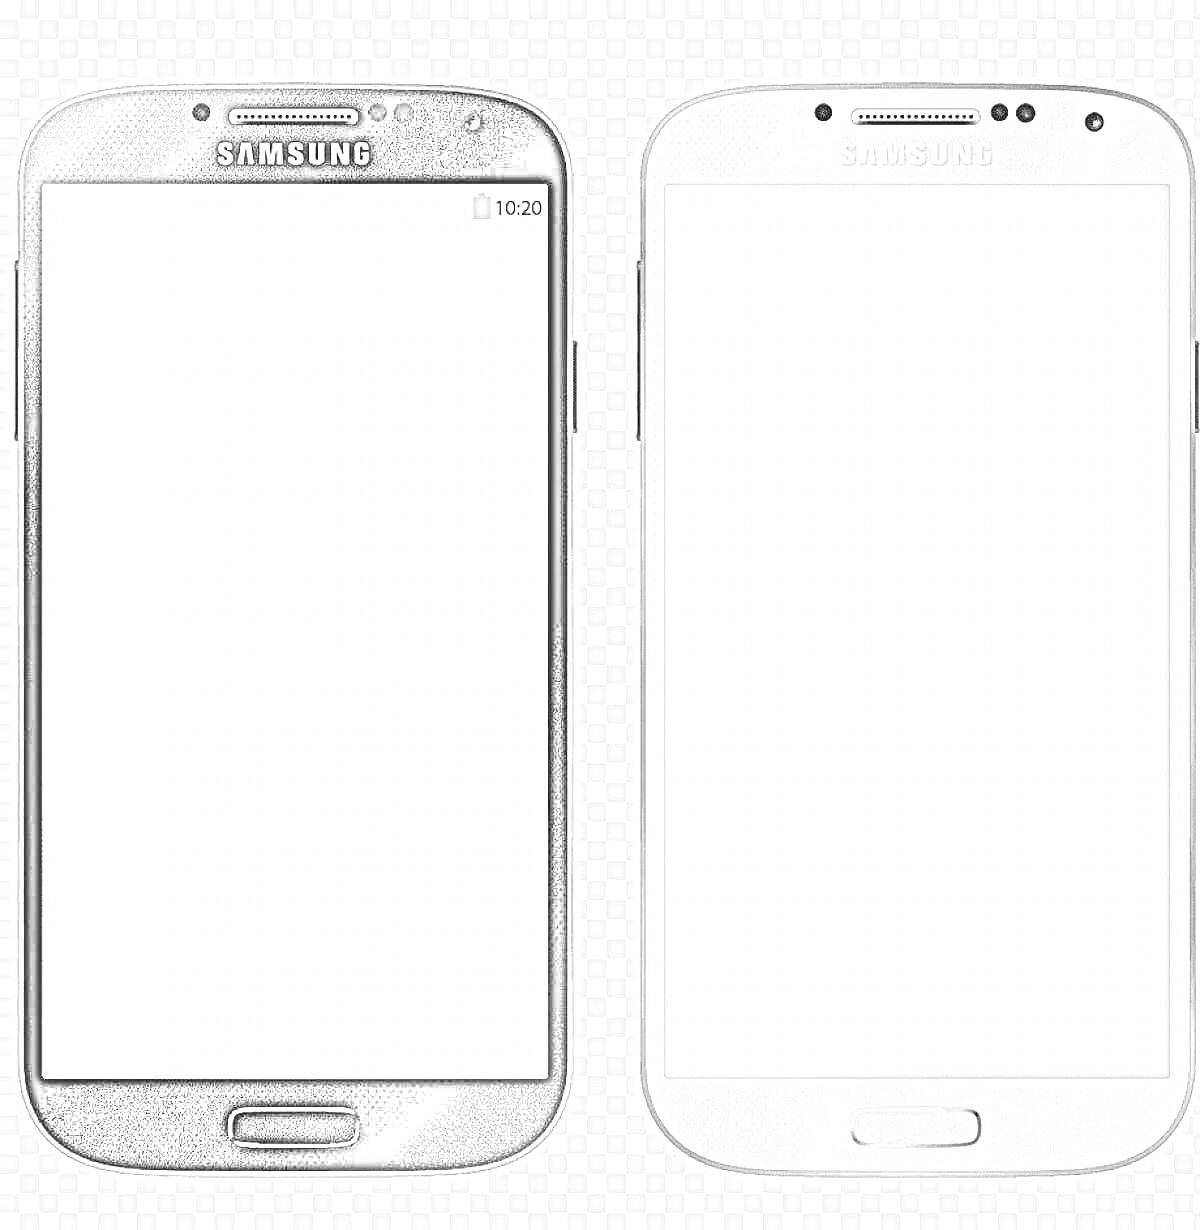 Раскраска Два смартфона Samsung: черный и белый, с экраном, значками сети и батареи, кнопкой домой внизу